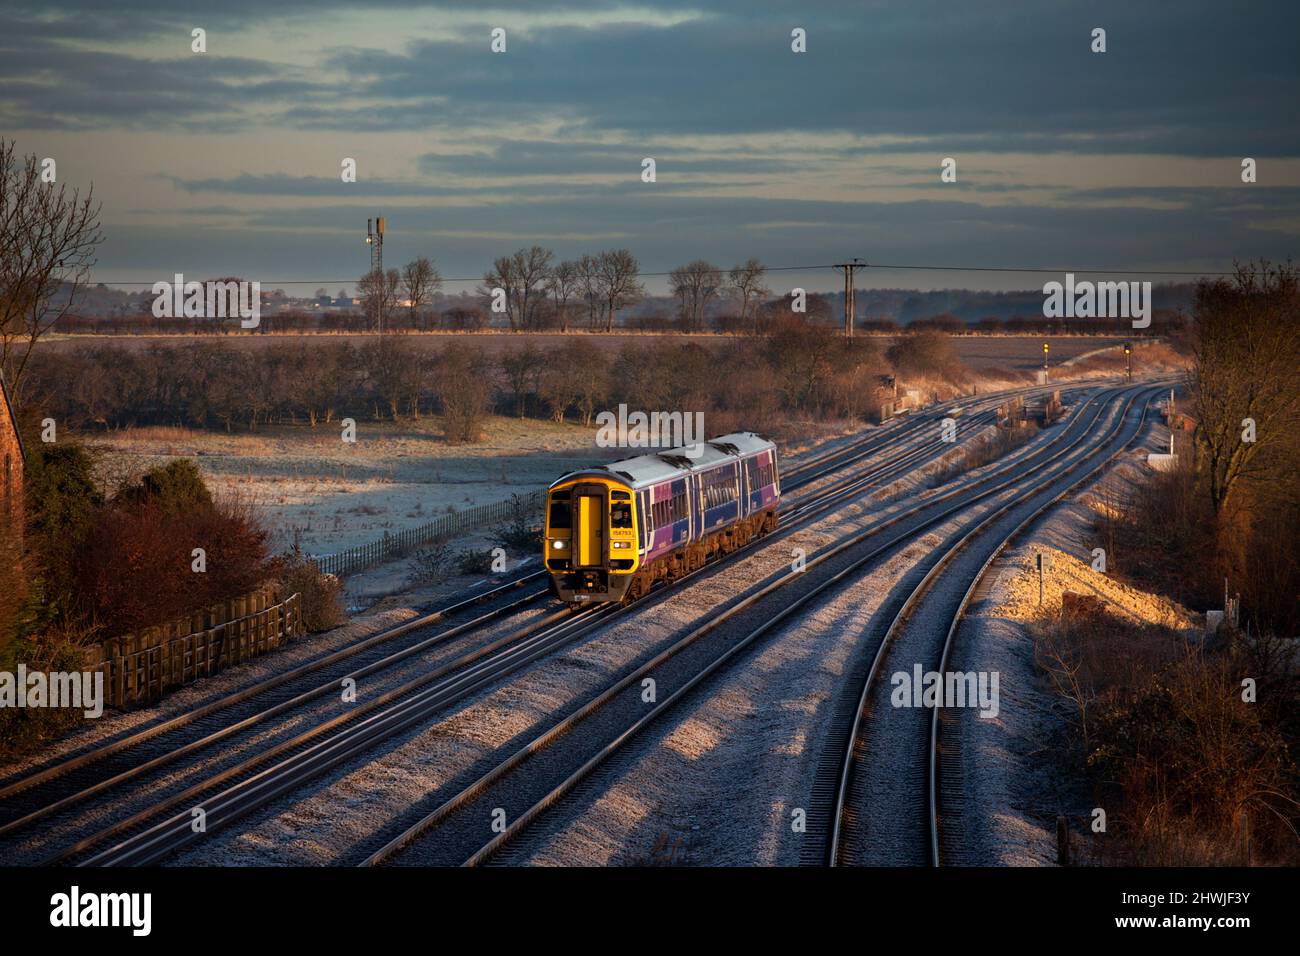 Nördlicher Schnellzug der Baureihe 158 158753 bei Sonnenaufgang im Winterlicht, der auf einer 4-spurigen Eisenbahn mit Frost am Boden verläuft Stockfoto